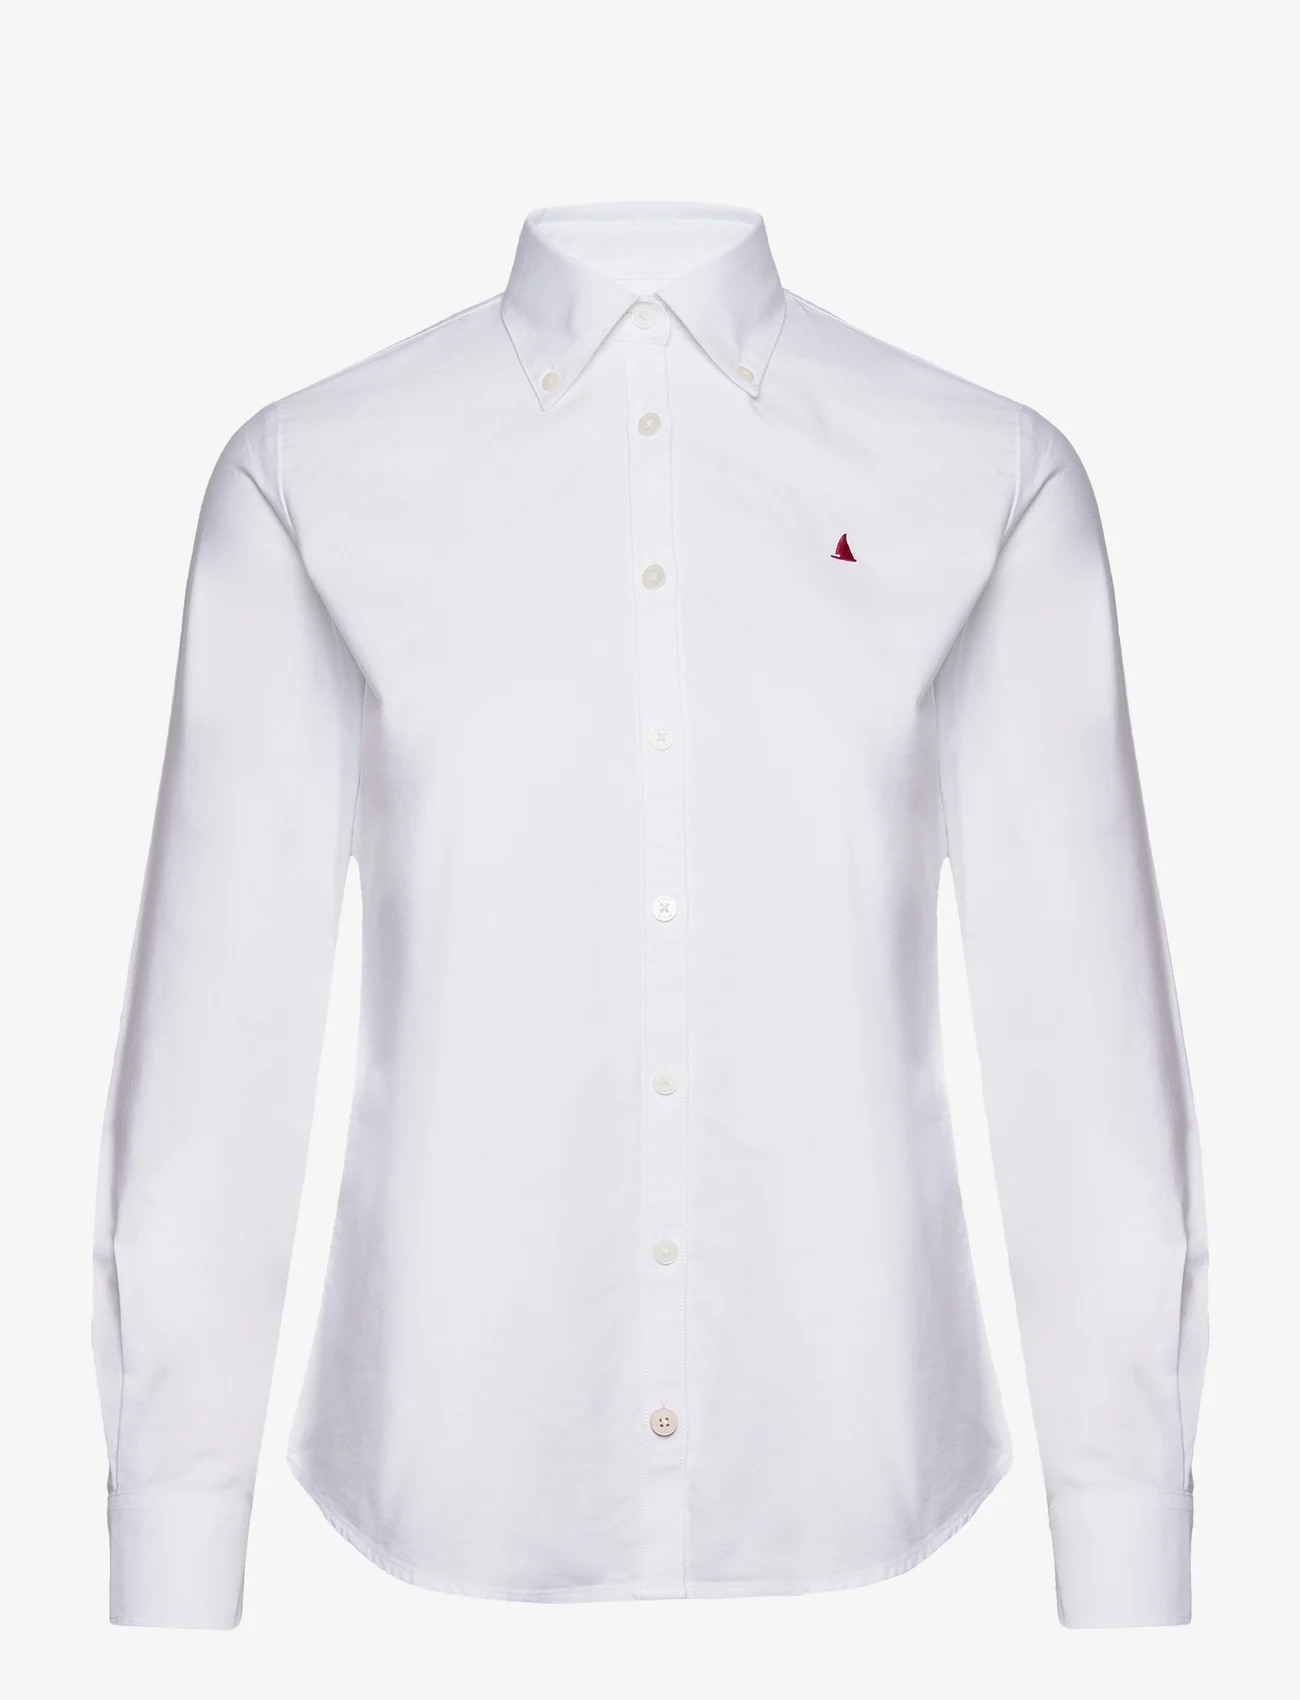 Musto - OXF LS SHIRT FW - pitkähihaiset paidat - 002 bright white - 0